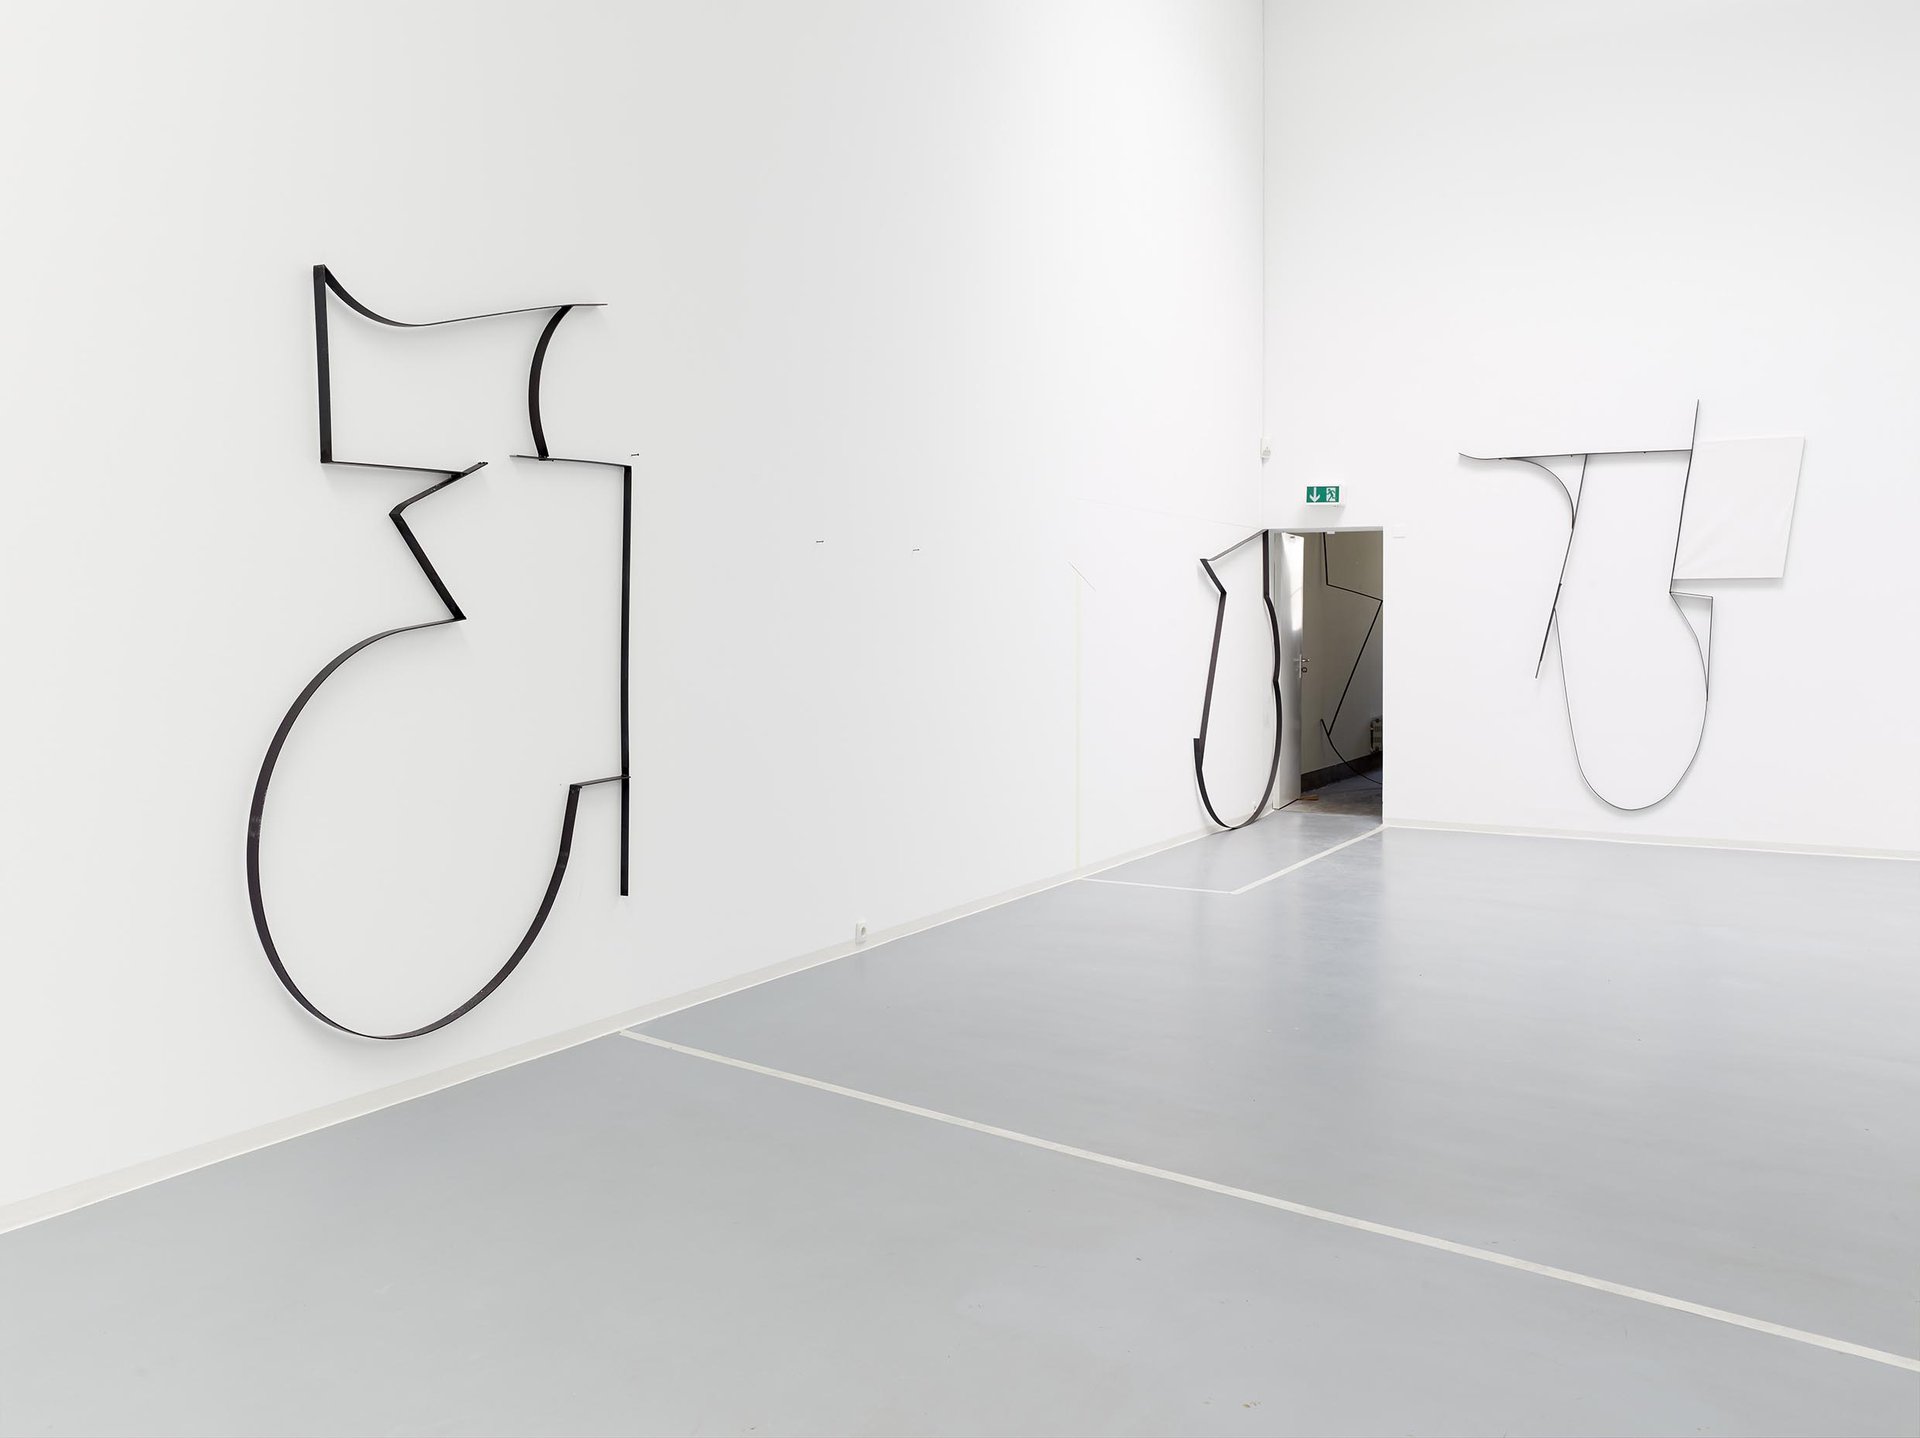 Jonathan Binet, Installationsansicht, 2015, Bonner Kunstverein, Courtesy der Künstler und Gaudel de Stampa, Paris. Photo: Simon Vogel